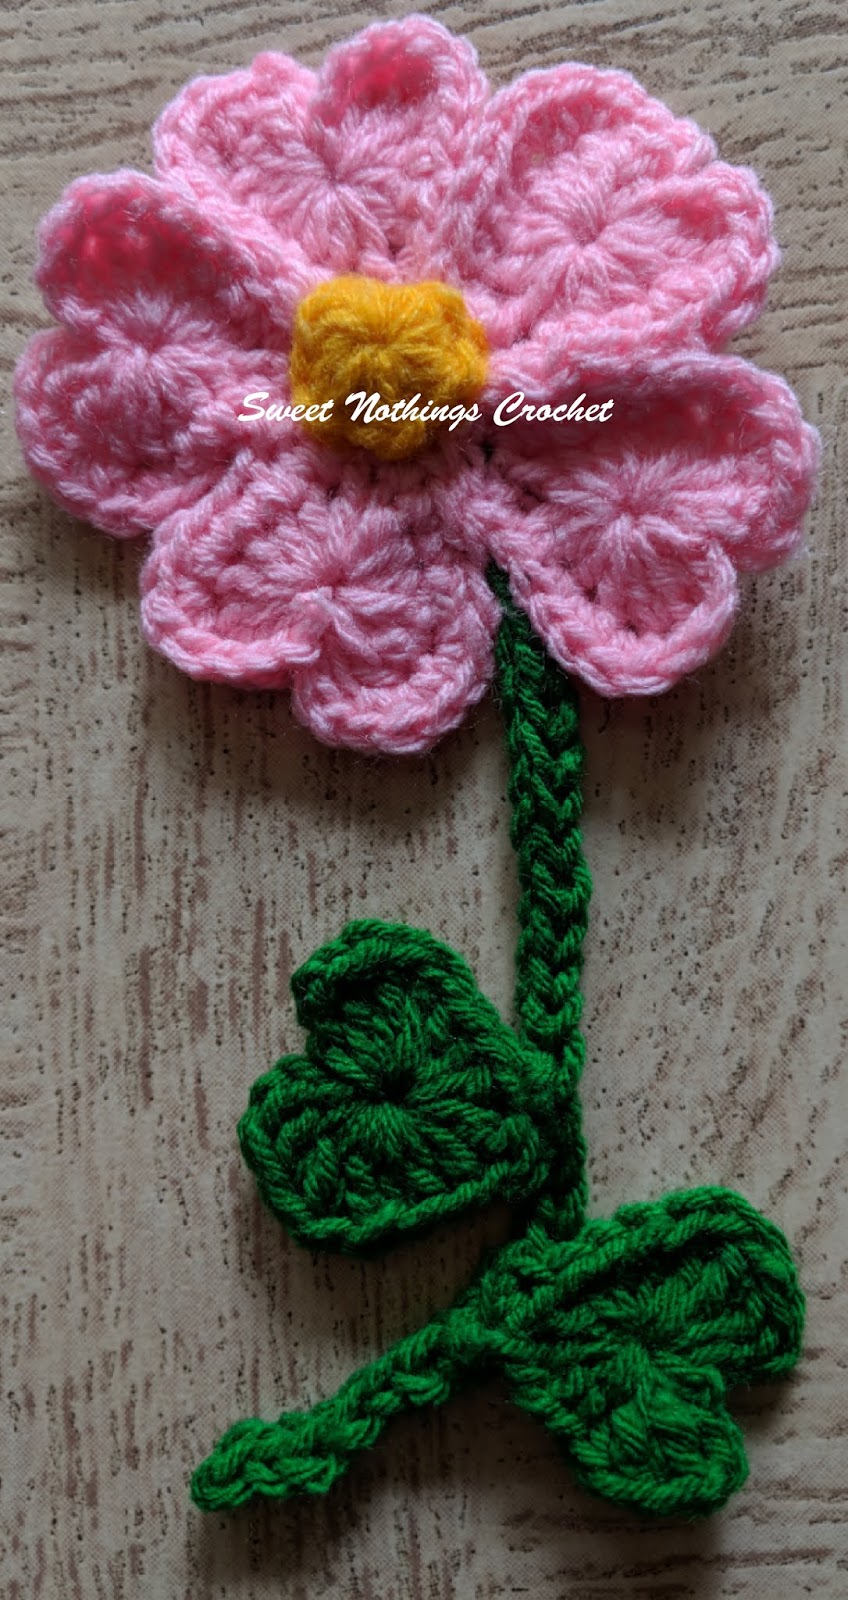 Sweet Nothings Crochet: F IS FOR … CROCHET MOTIFS